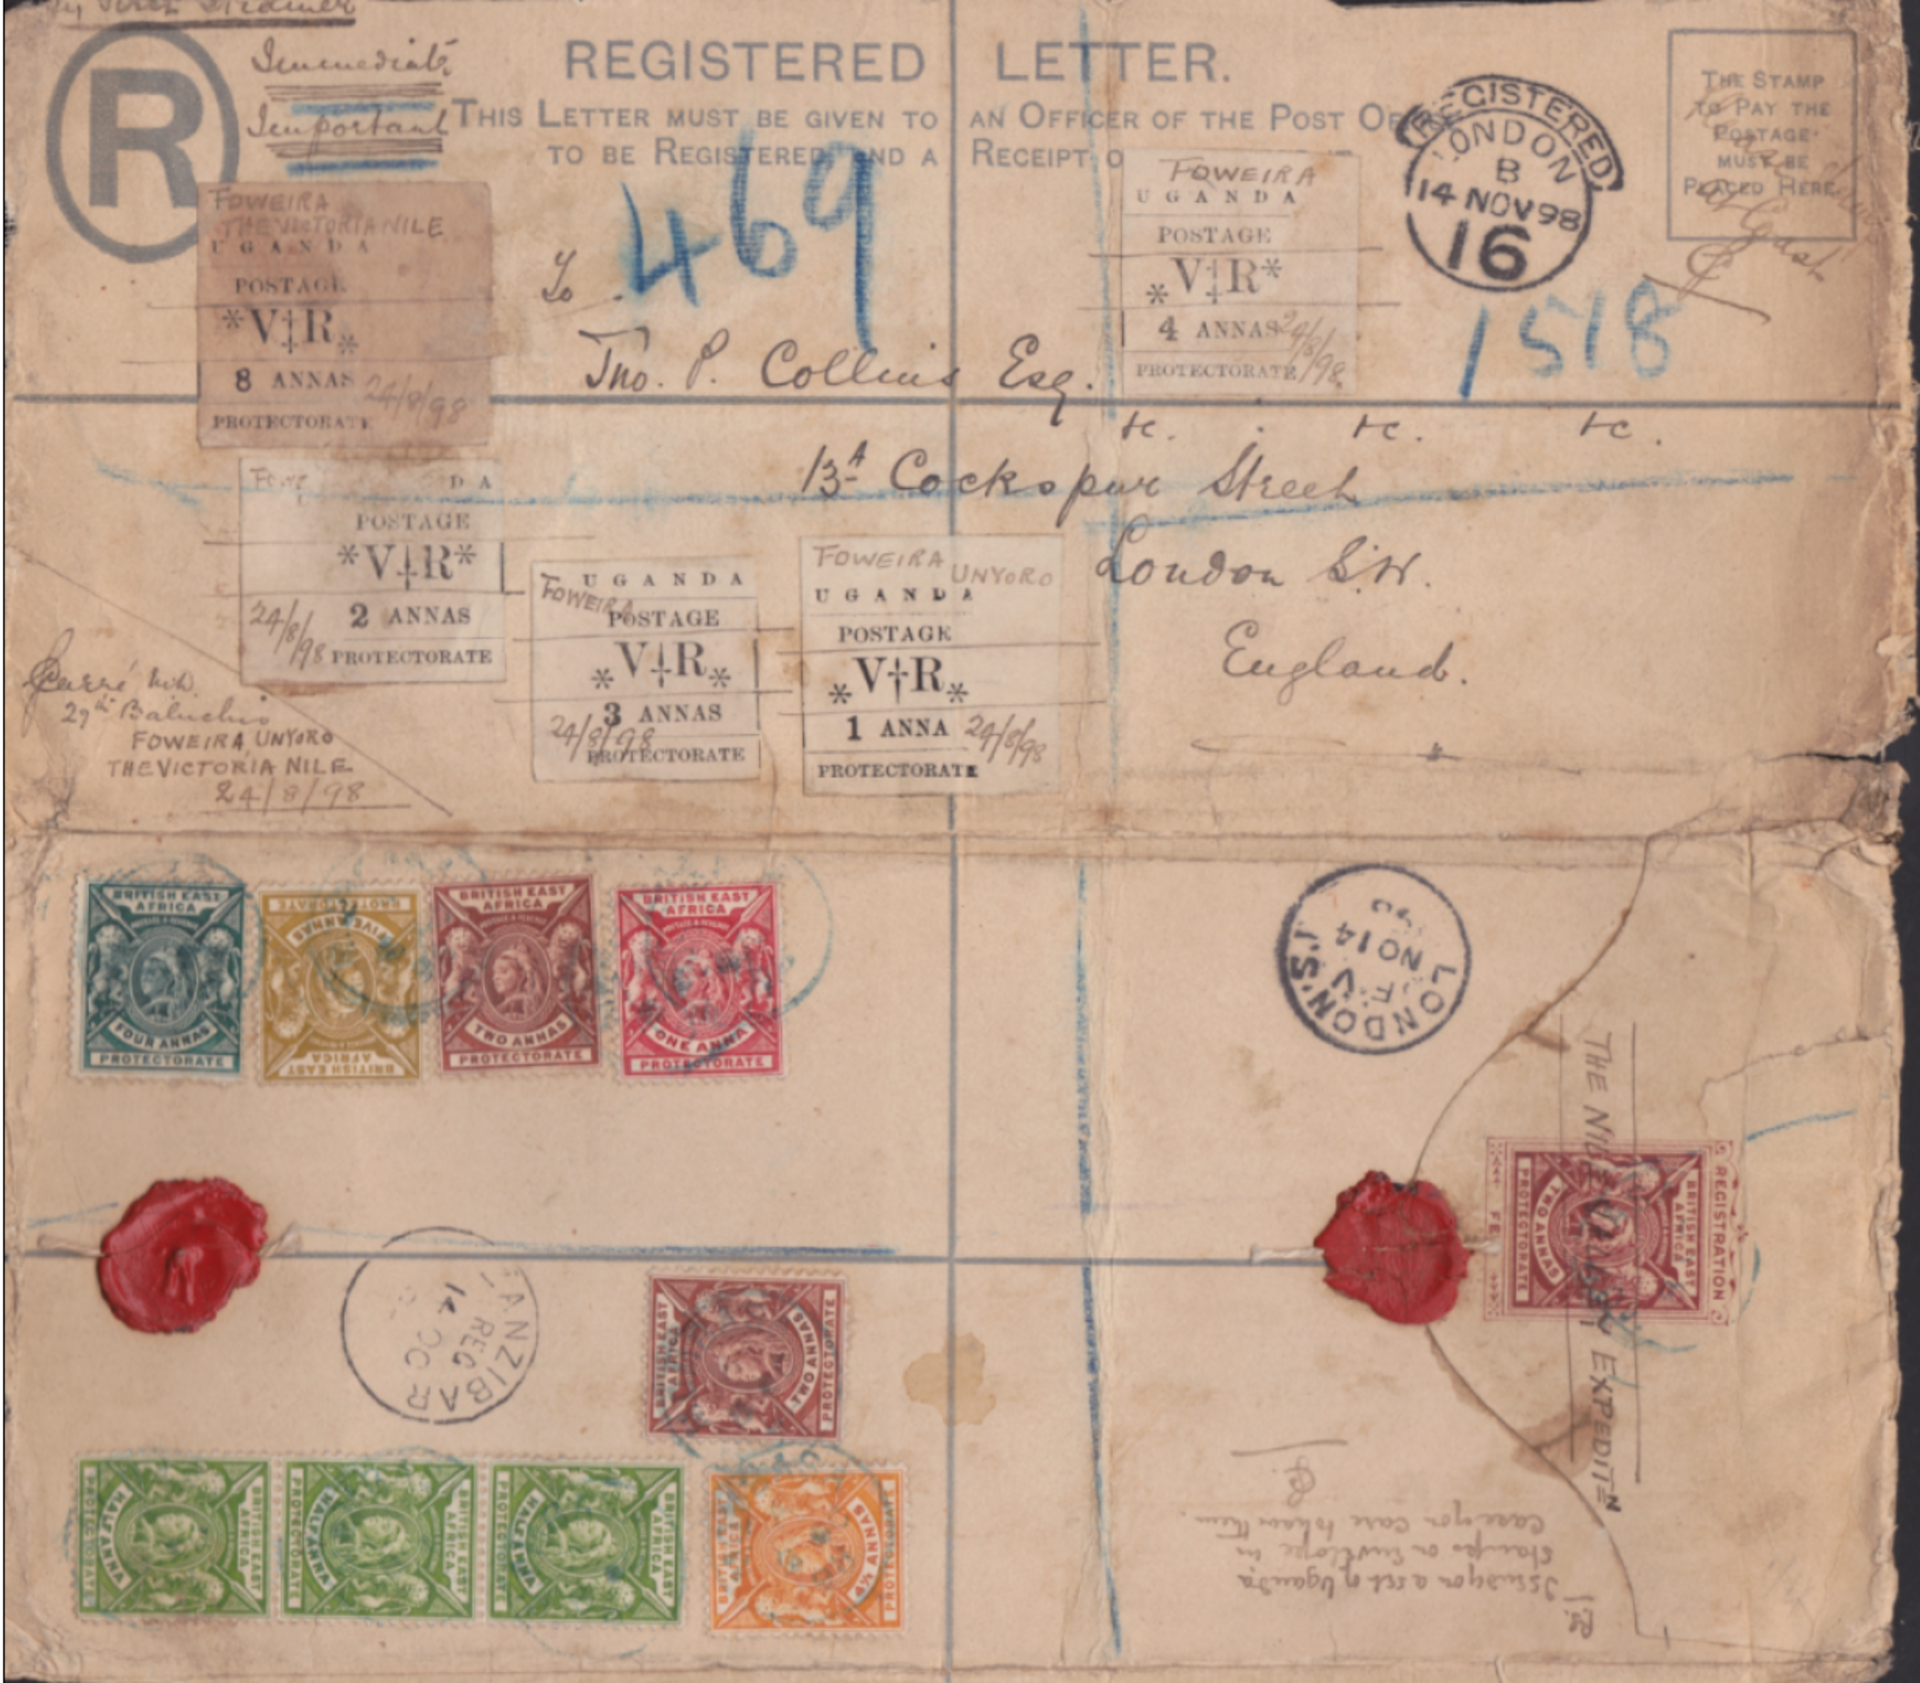 UGANDA 1898 (Aug. 24) - British East Africa 2a H2 size postal stationery registration envelope (